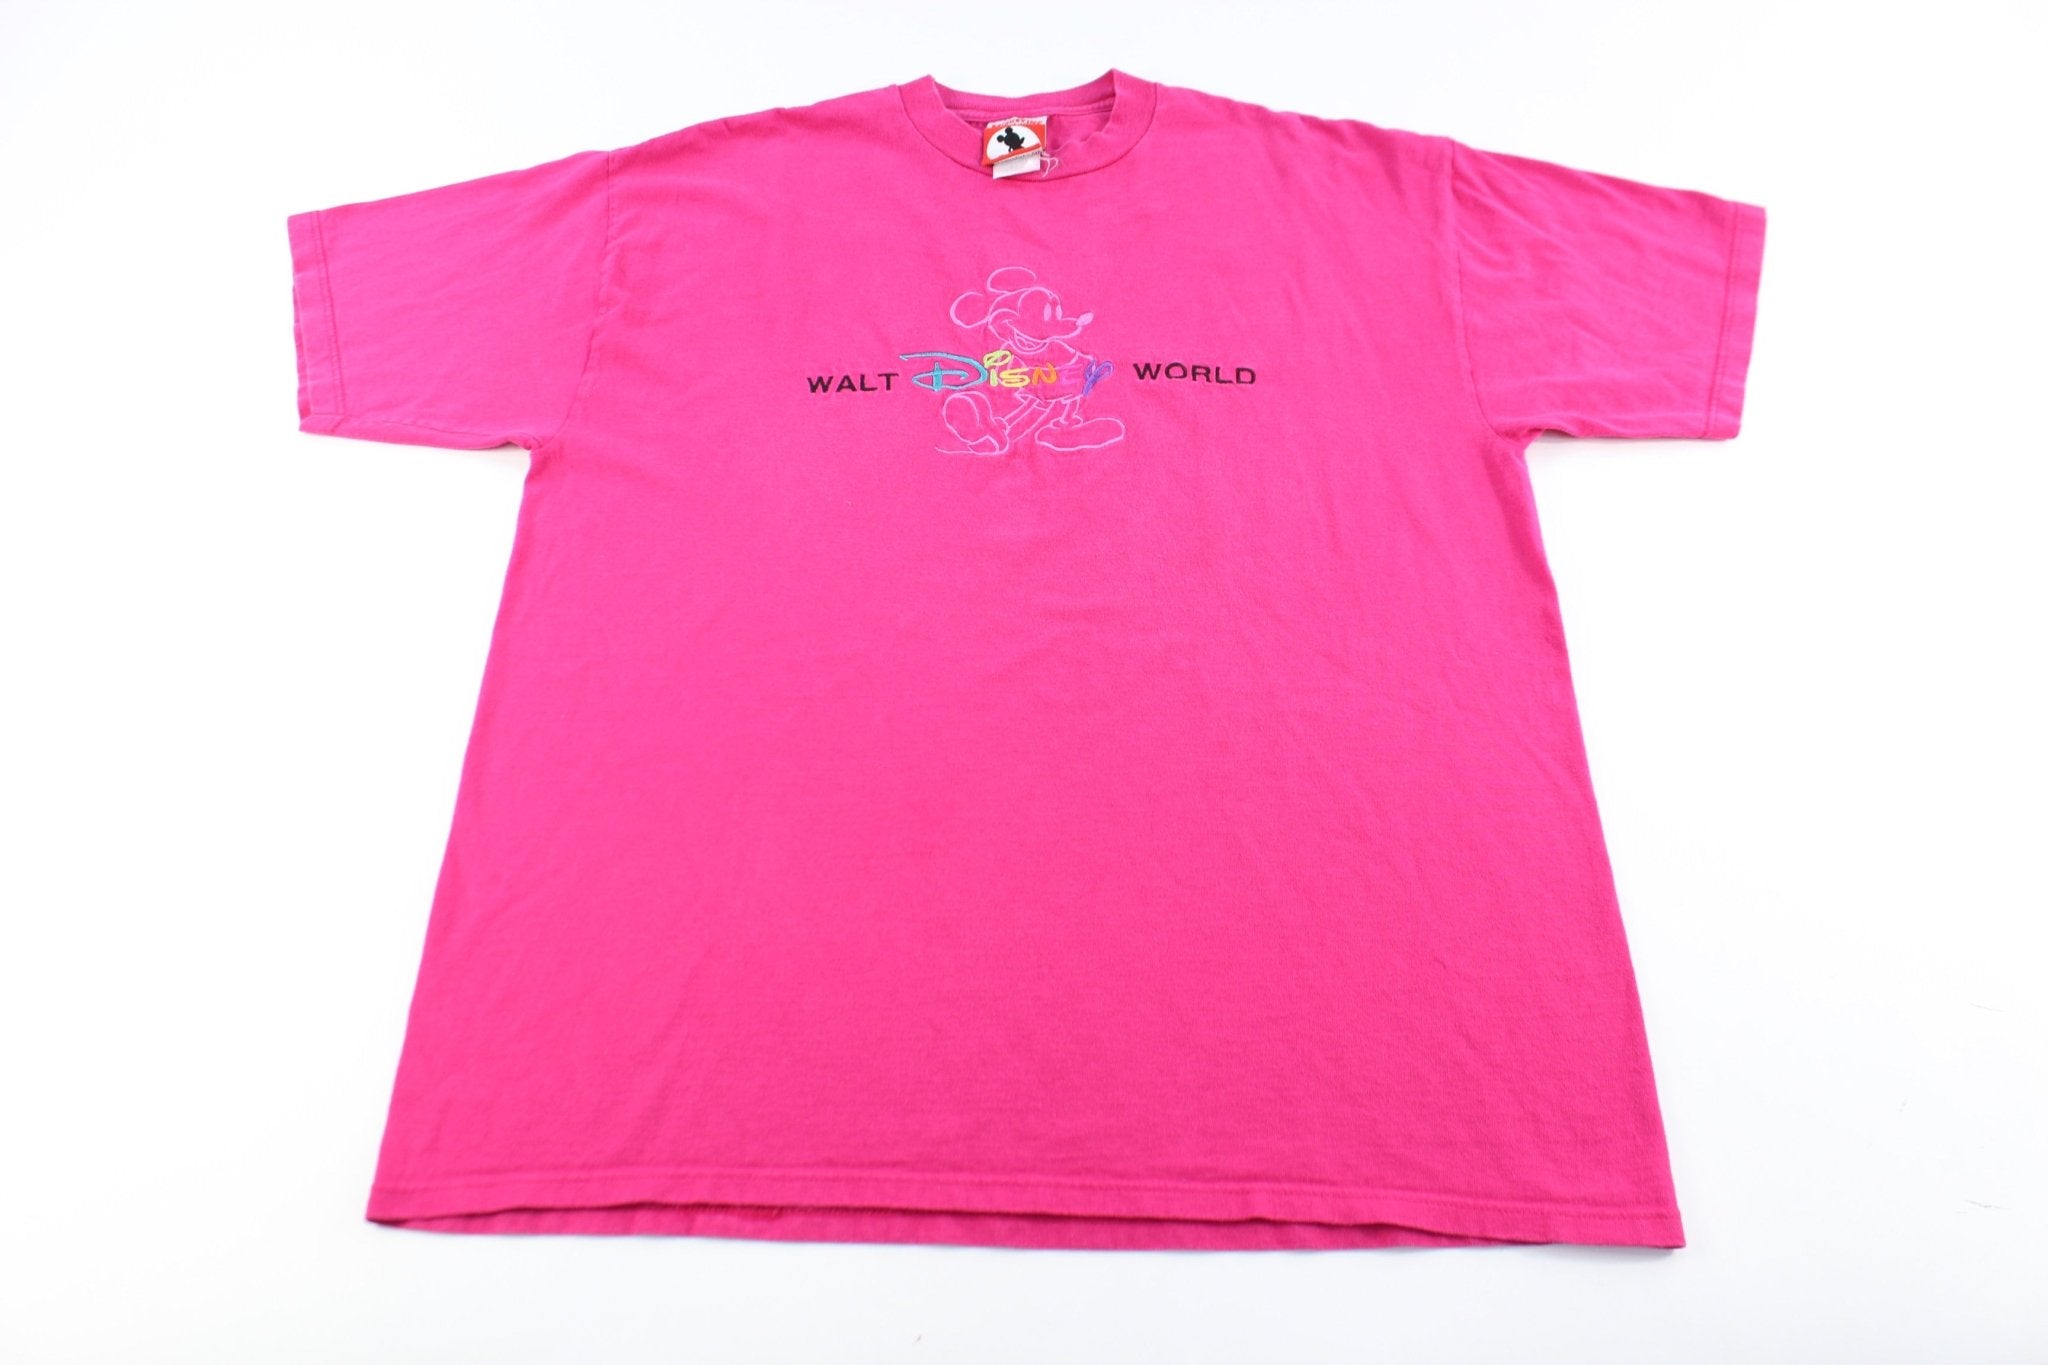 Mickey Inc Embroidered Walt Disney World Pink T-Shirt - ThriftedThreads.com